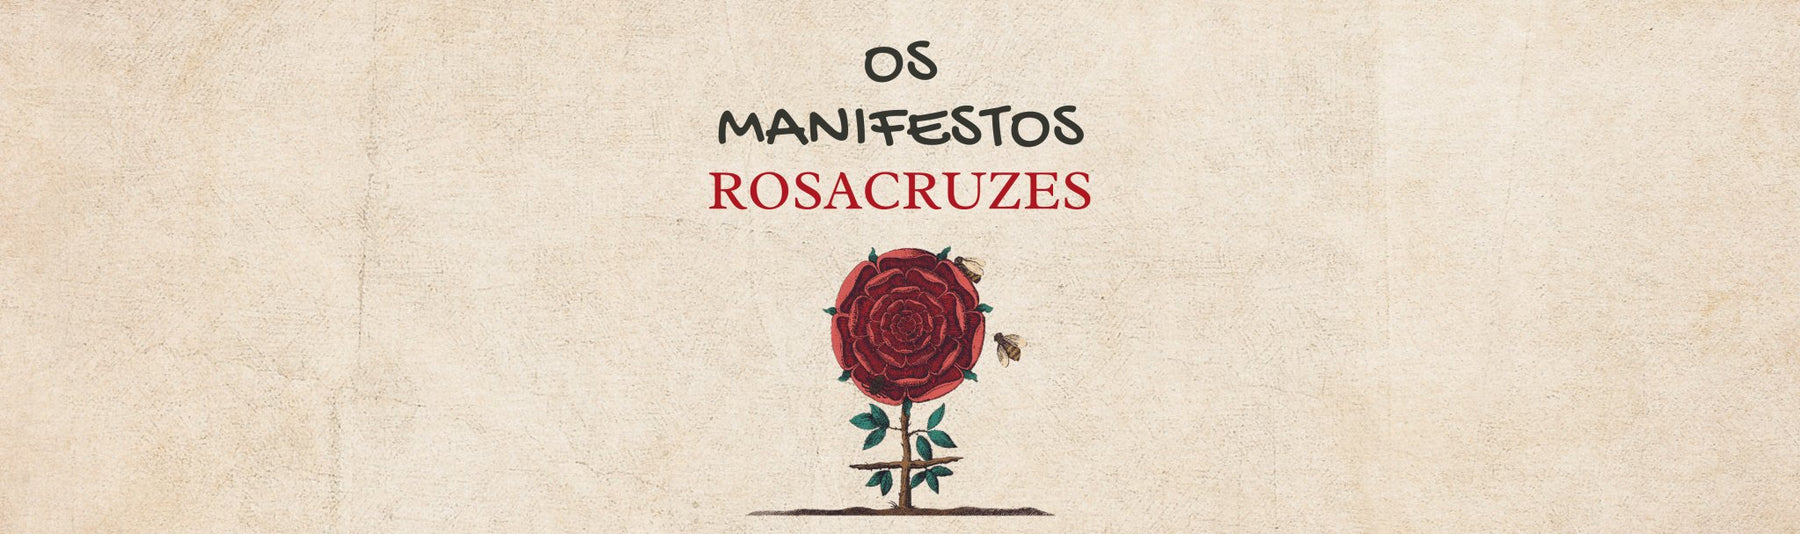 Descubra a ligação entre os Manifestos Rosacruzes e a Declaração Universal dos Direitos do Homem. - Alma dos Livros